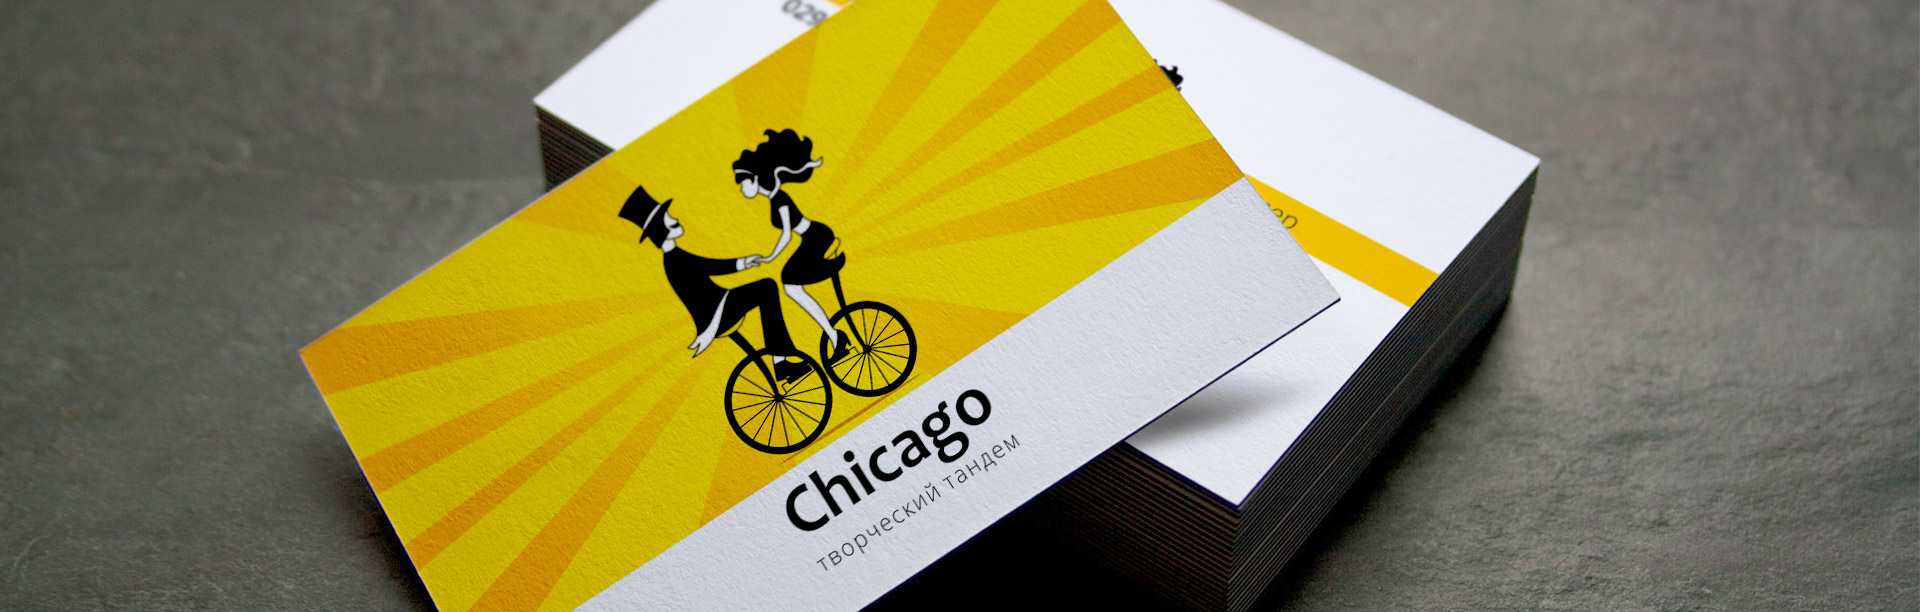 Chicago-создание-логотипа-ведущих-праздничных-мероприятий